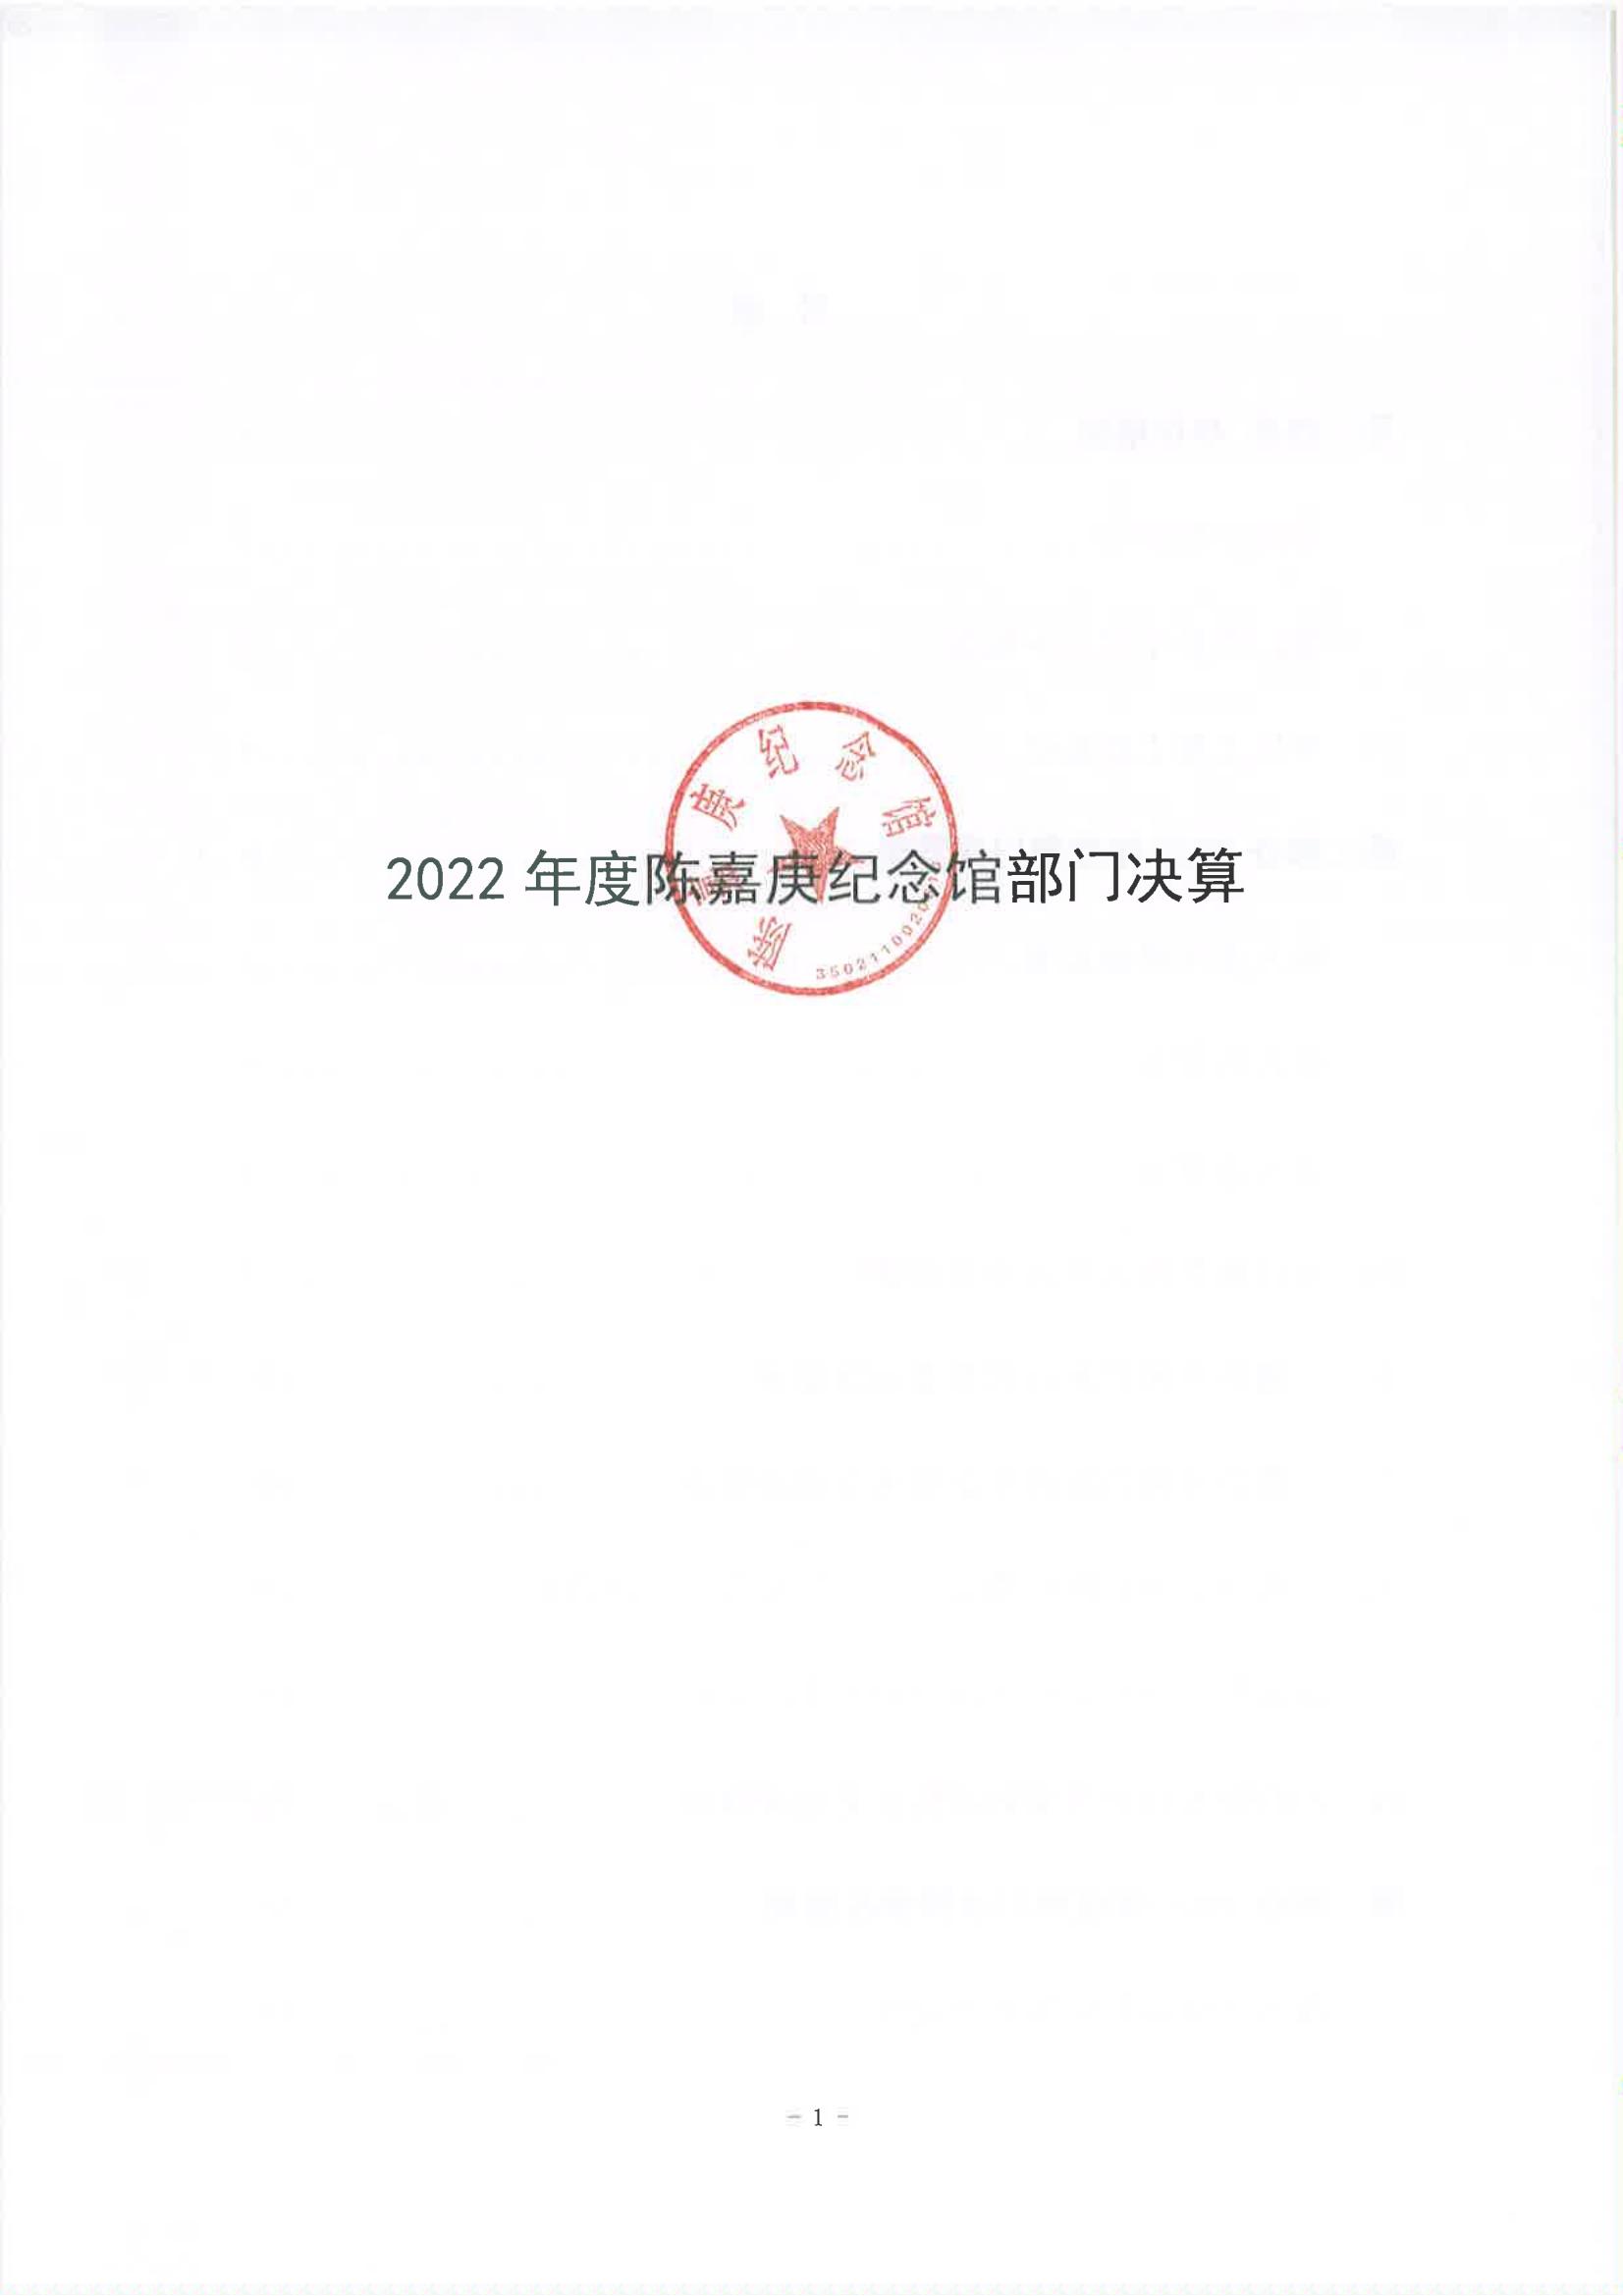 2022年度陈嘉庚纪念馆部门决算_00.jpg